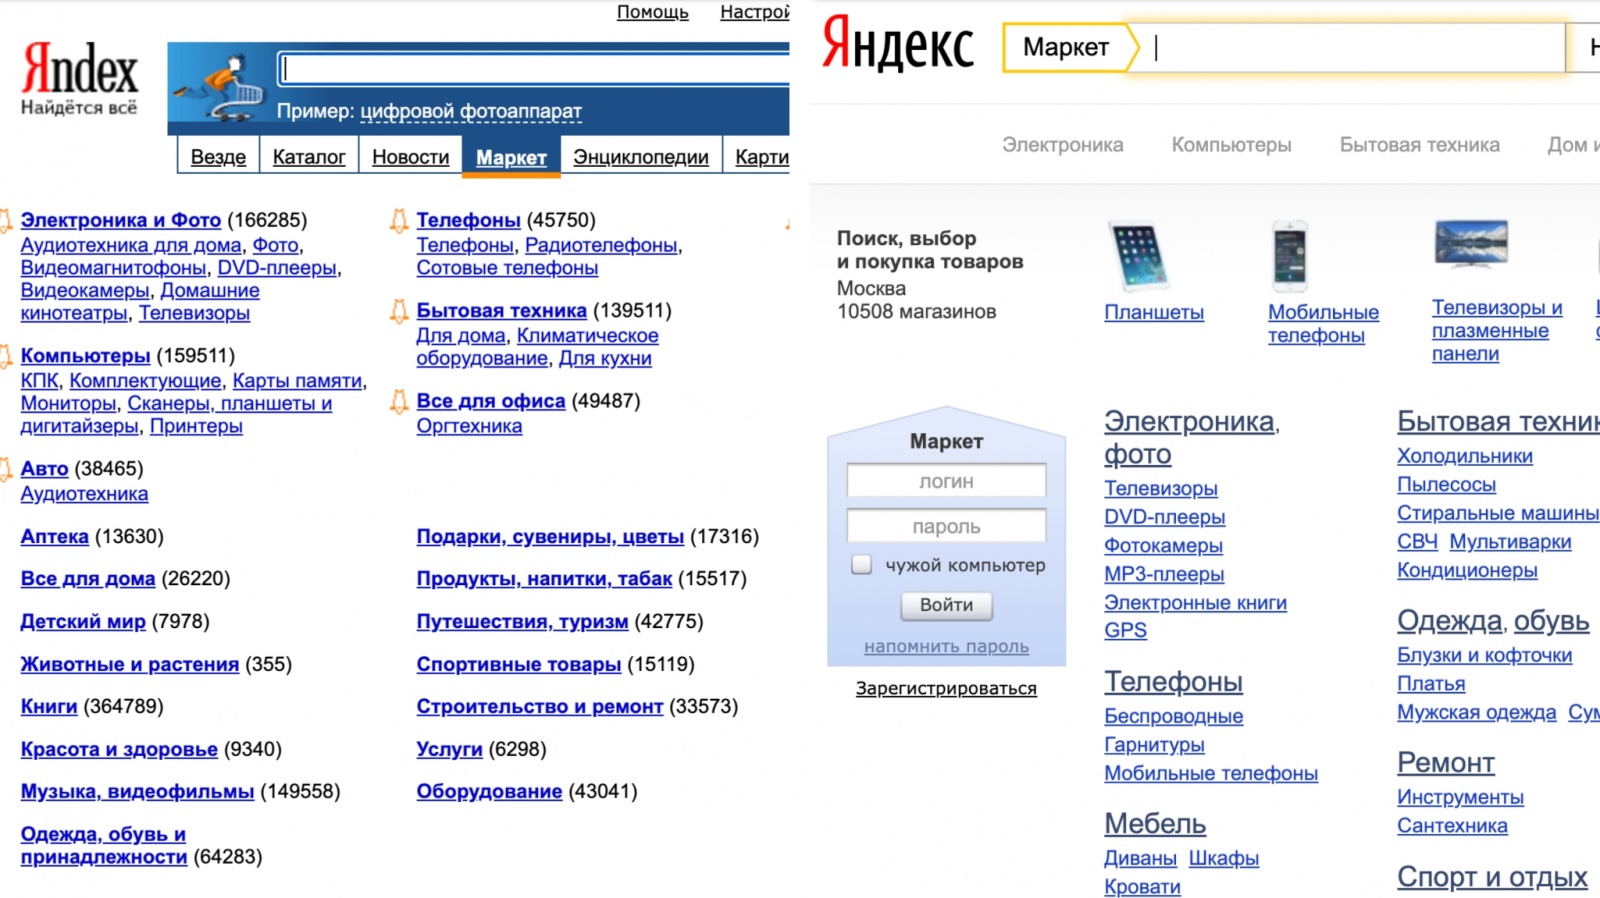 Главная страница market.yandex.ru в 2004 (слева) и 2014 годах